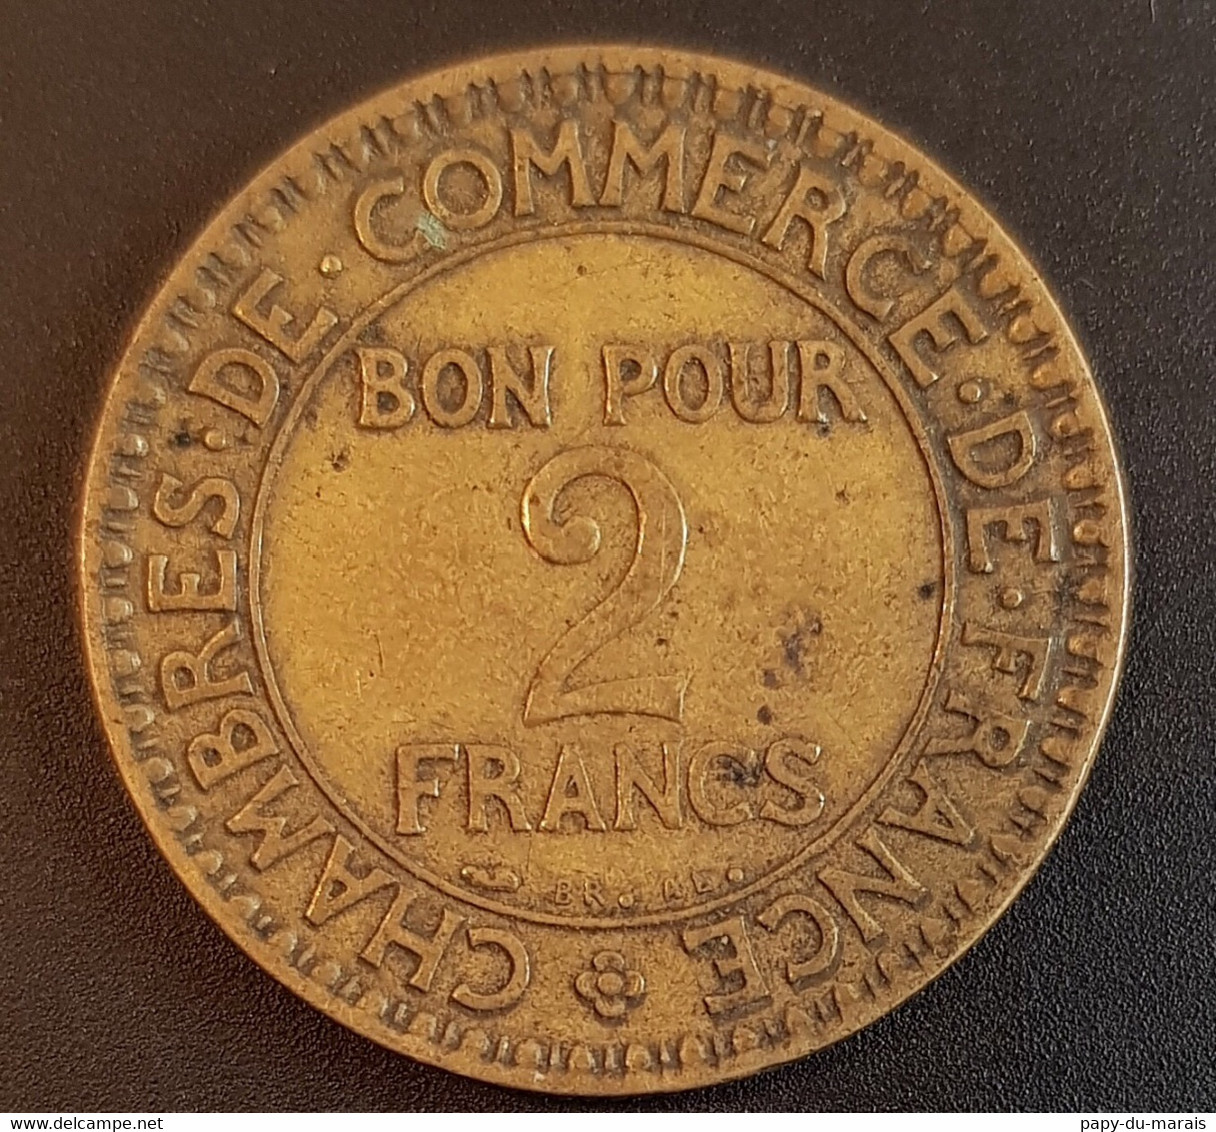 Pièce Fautée (?) 2 Francs 1925 France - Percée Au Centre+ Manque D De Domard - Varietà E Curiosità